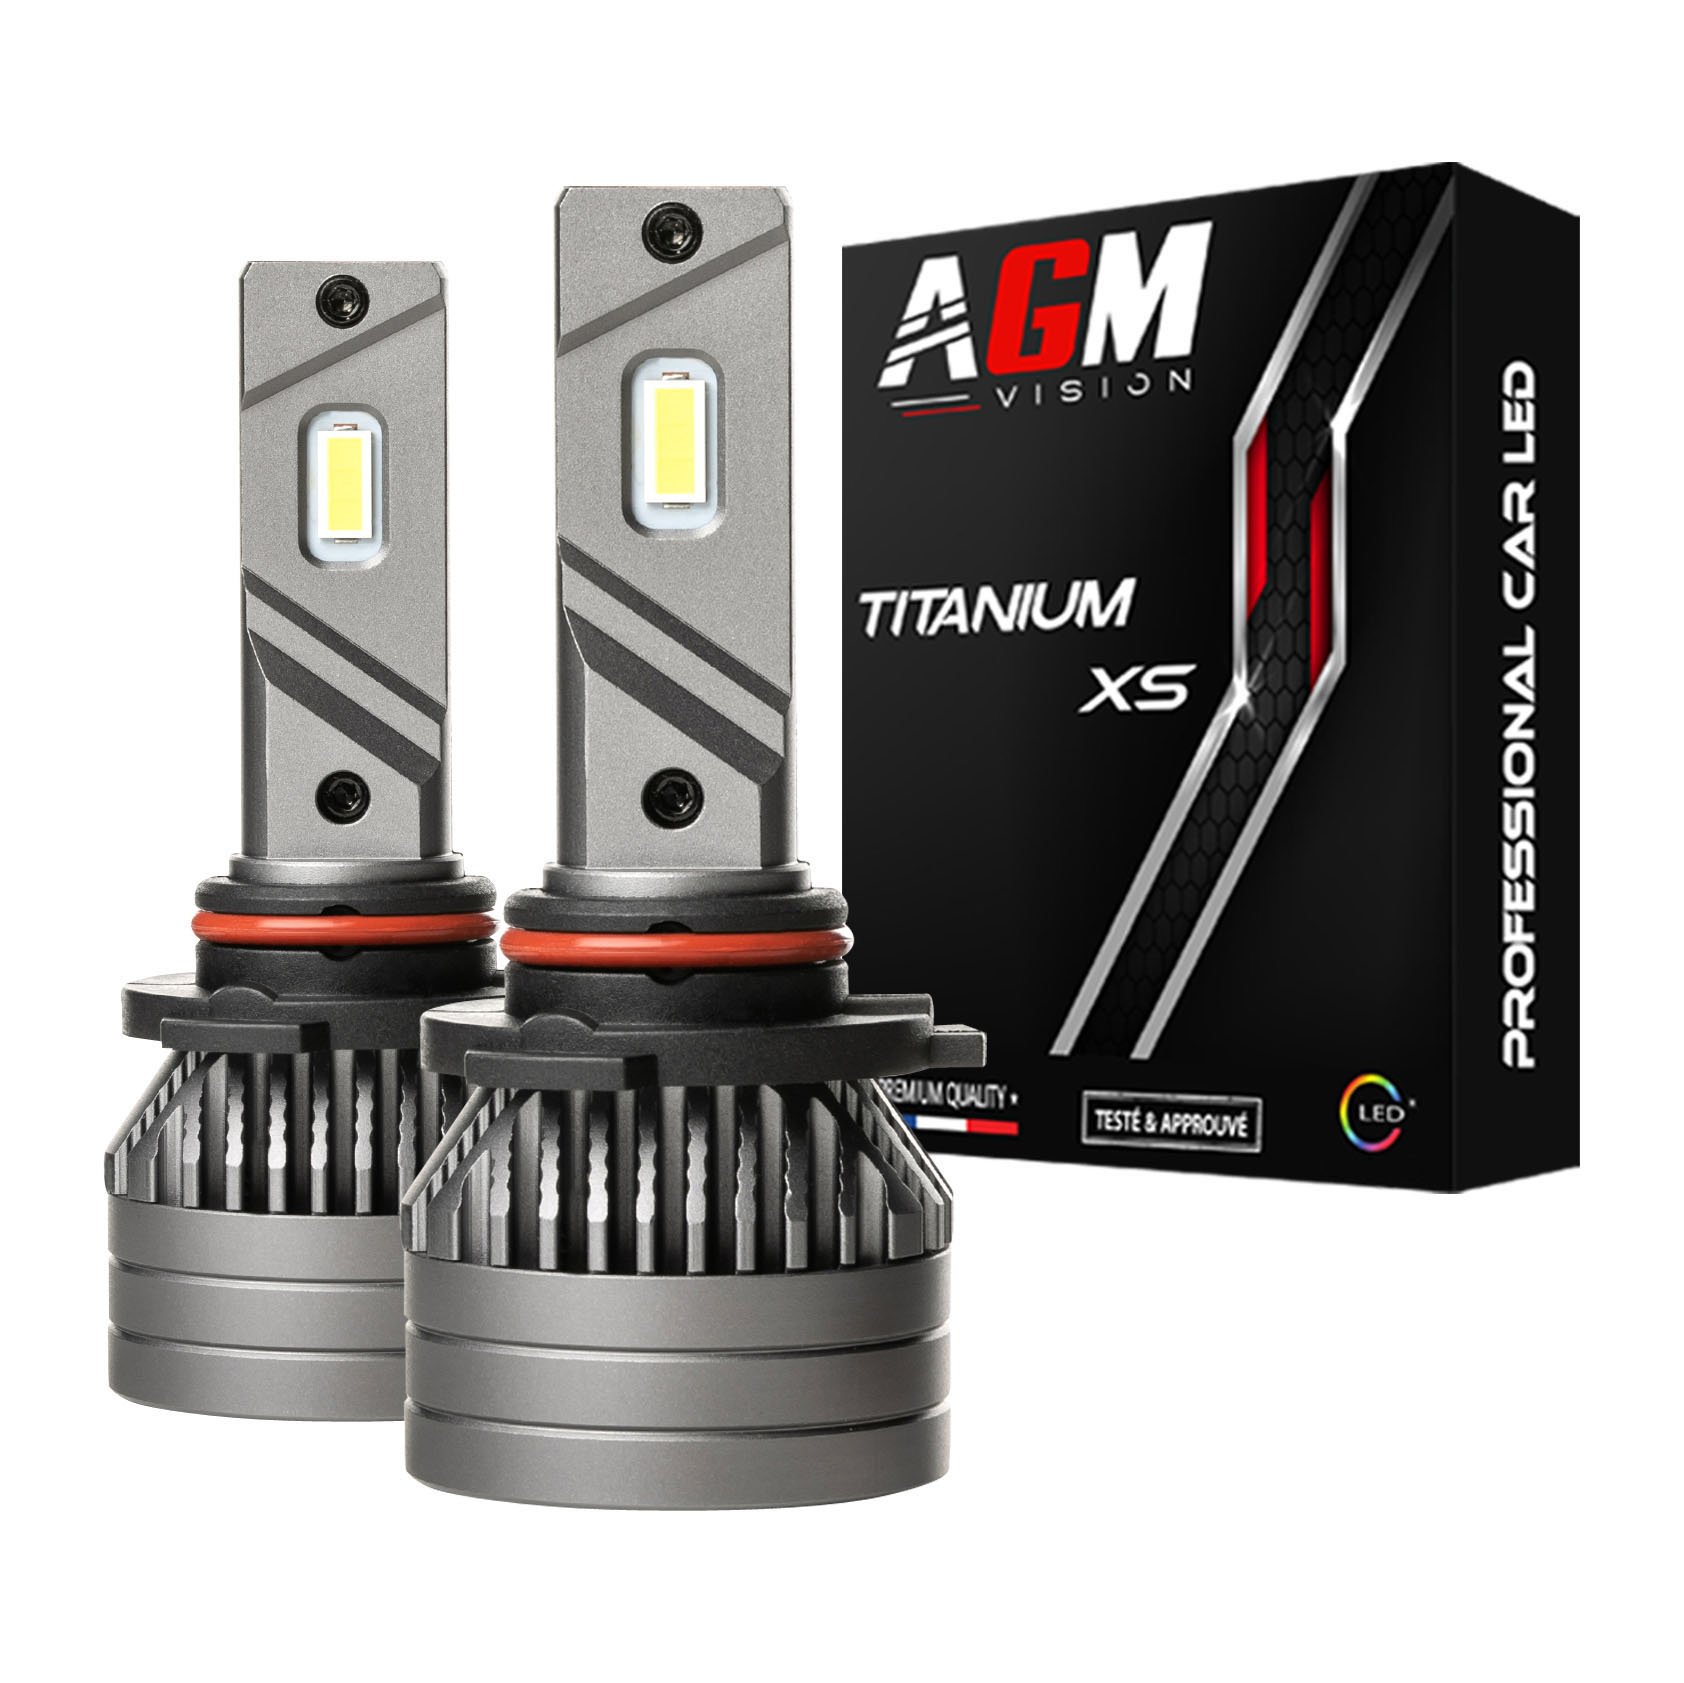 Kit Ampoules LED HB4 TITANIUM XS